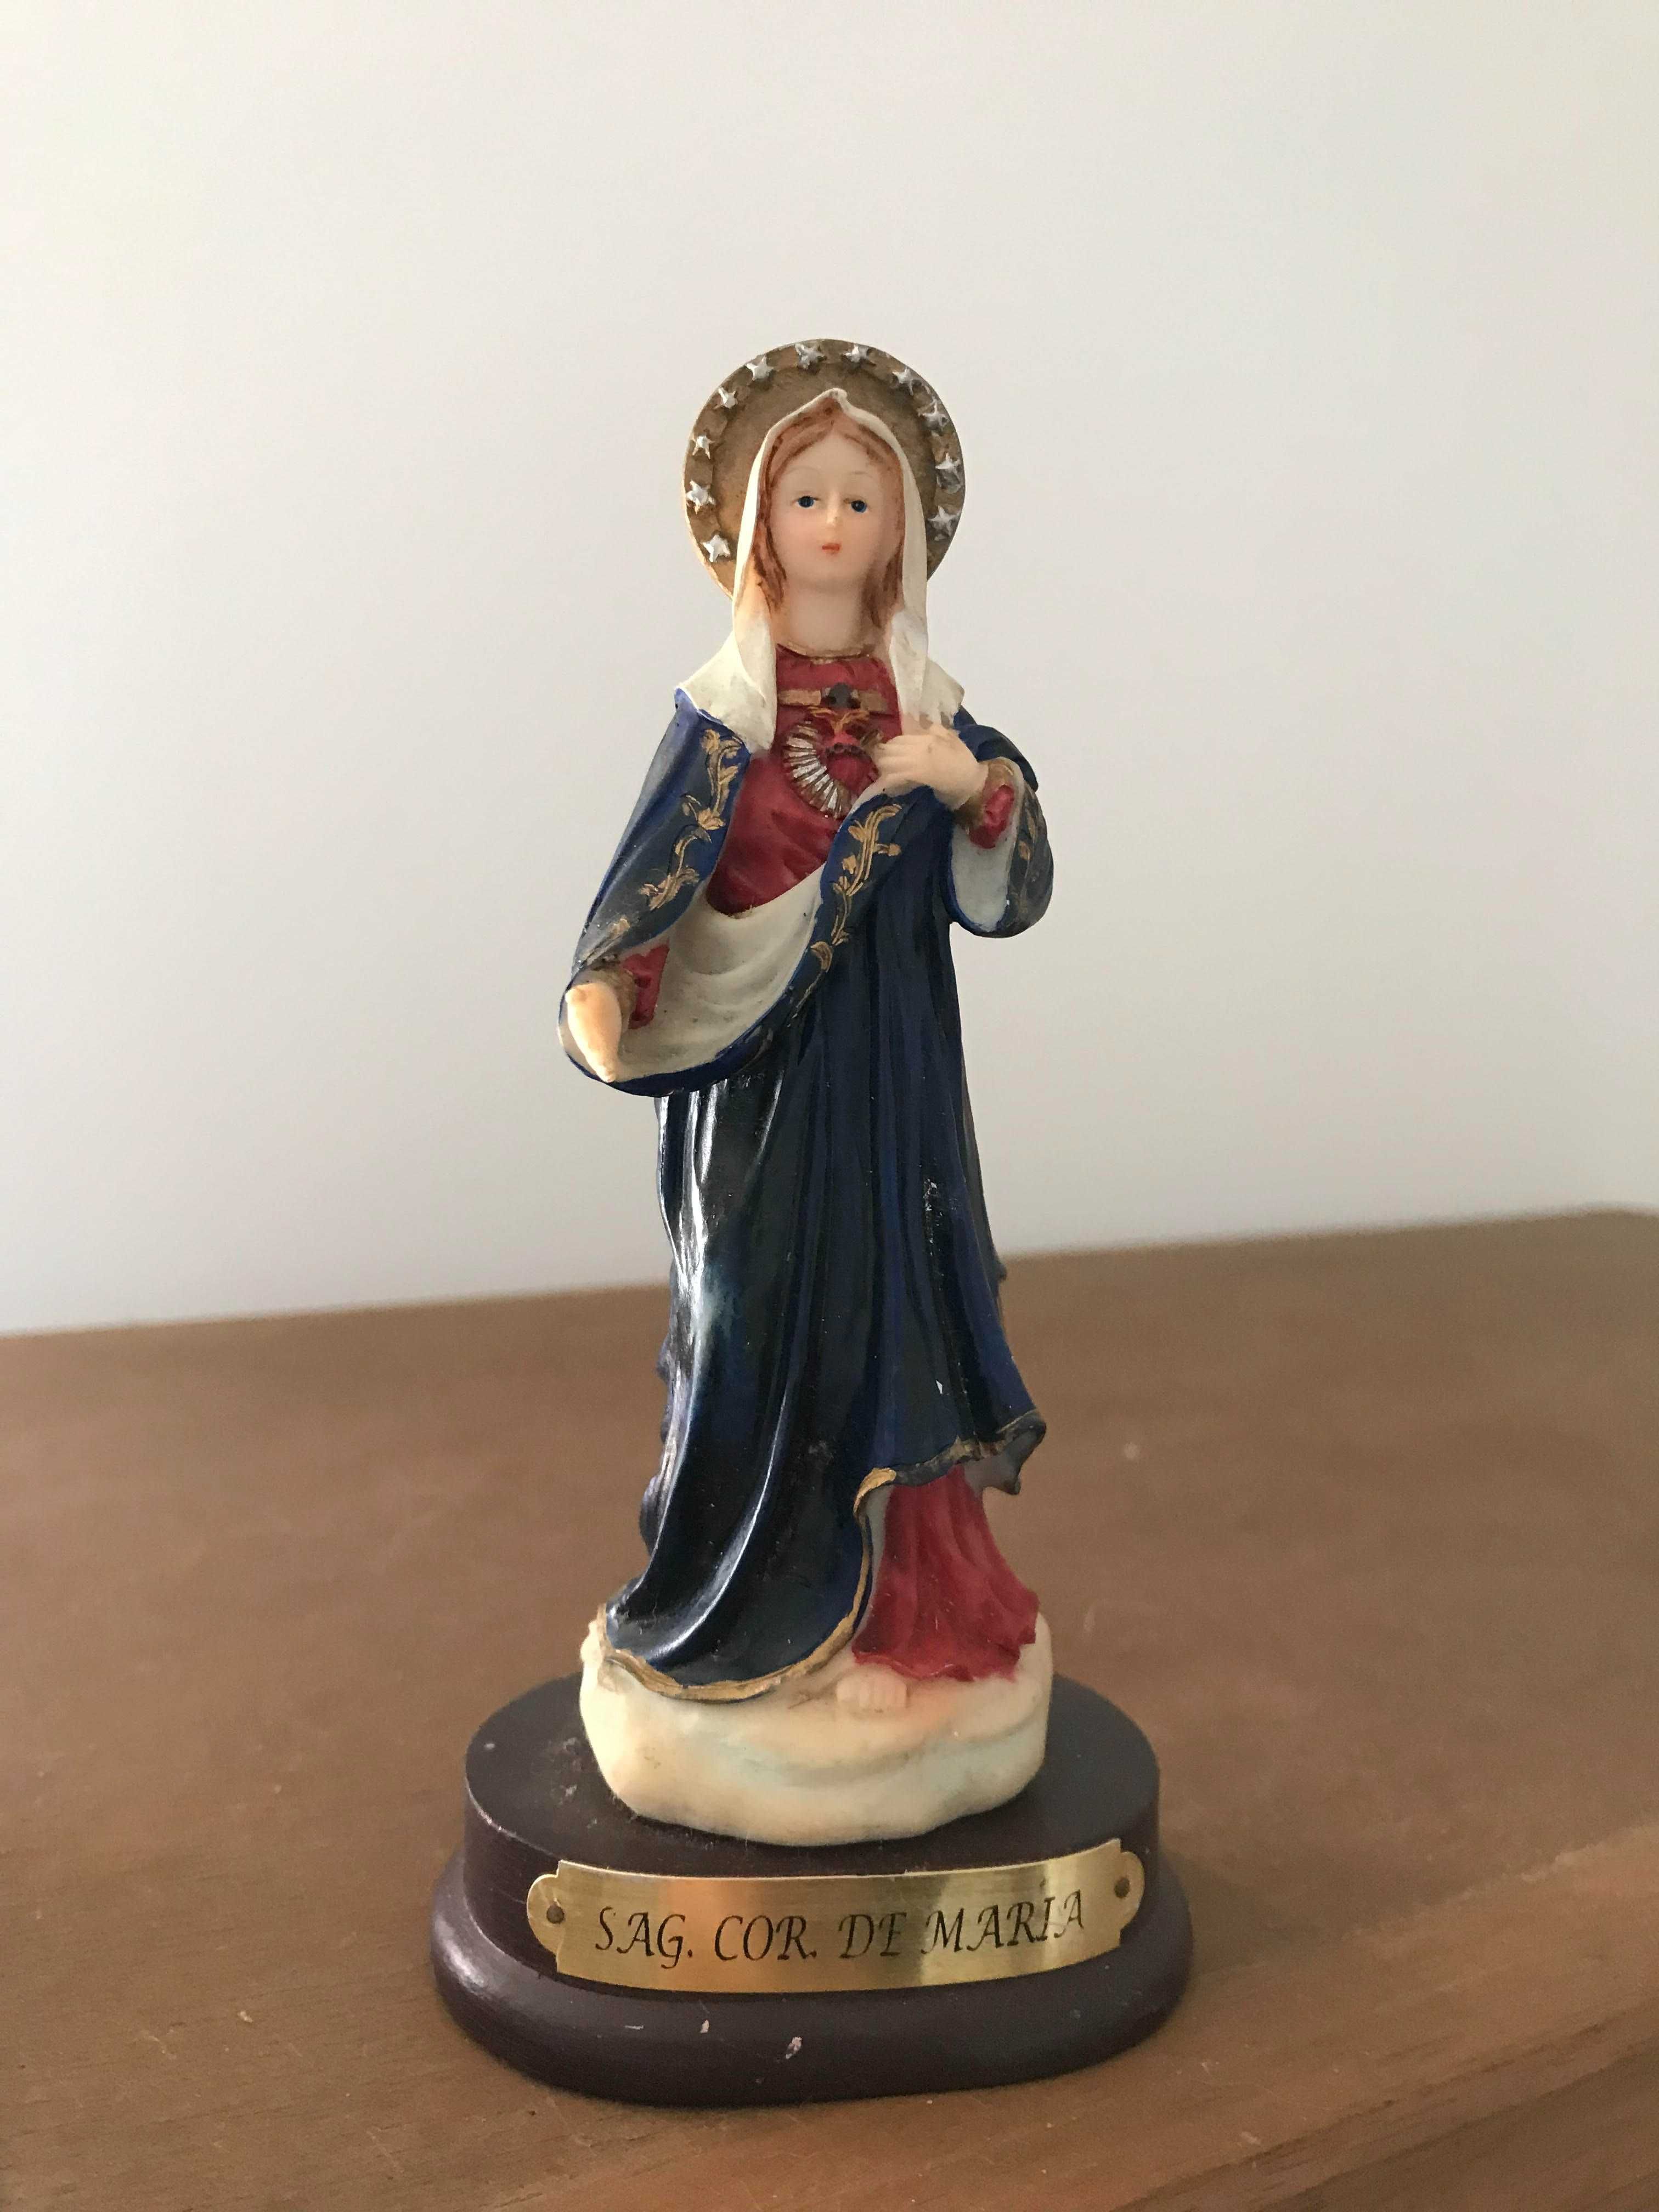 Religioso - Imagem do Sagrado Coração de Maria